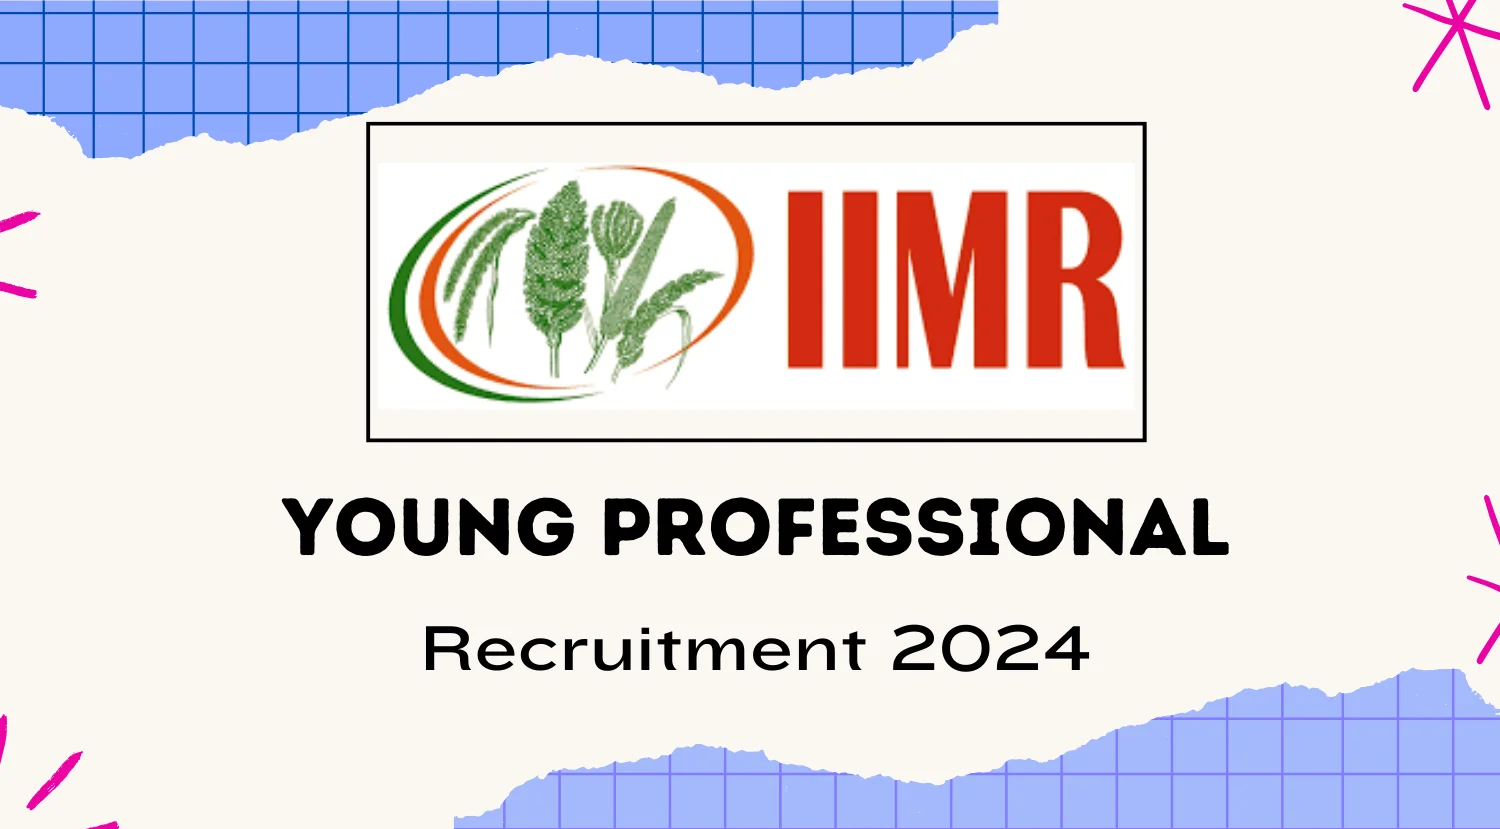 ICMR IIMR Recruitment 2024